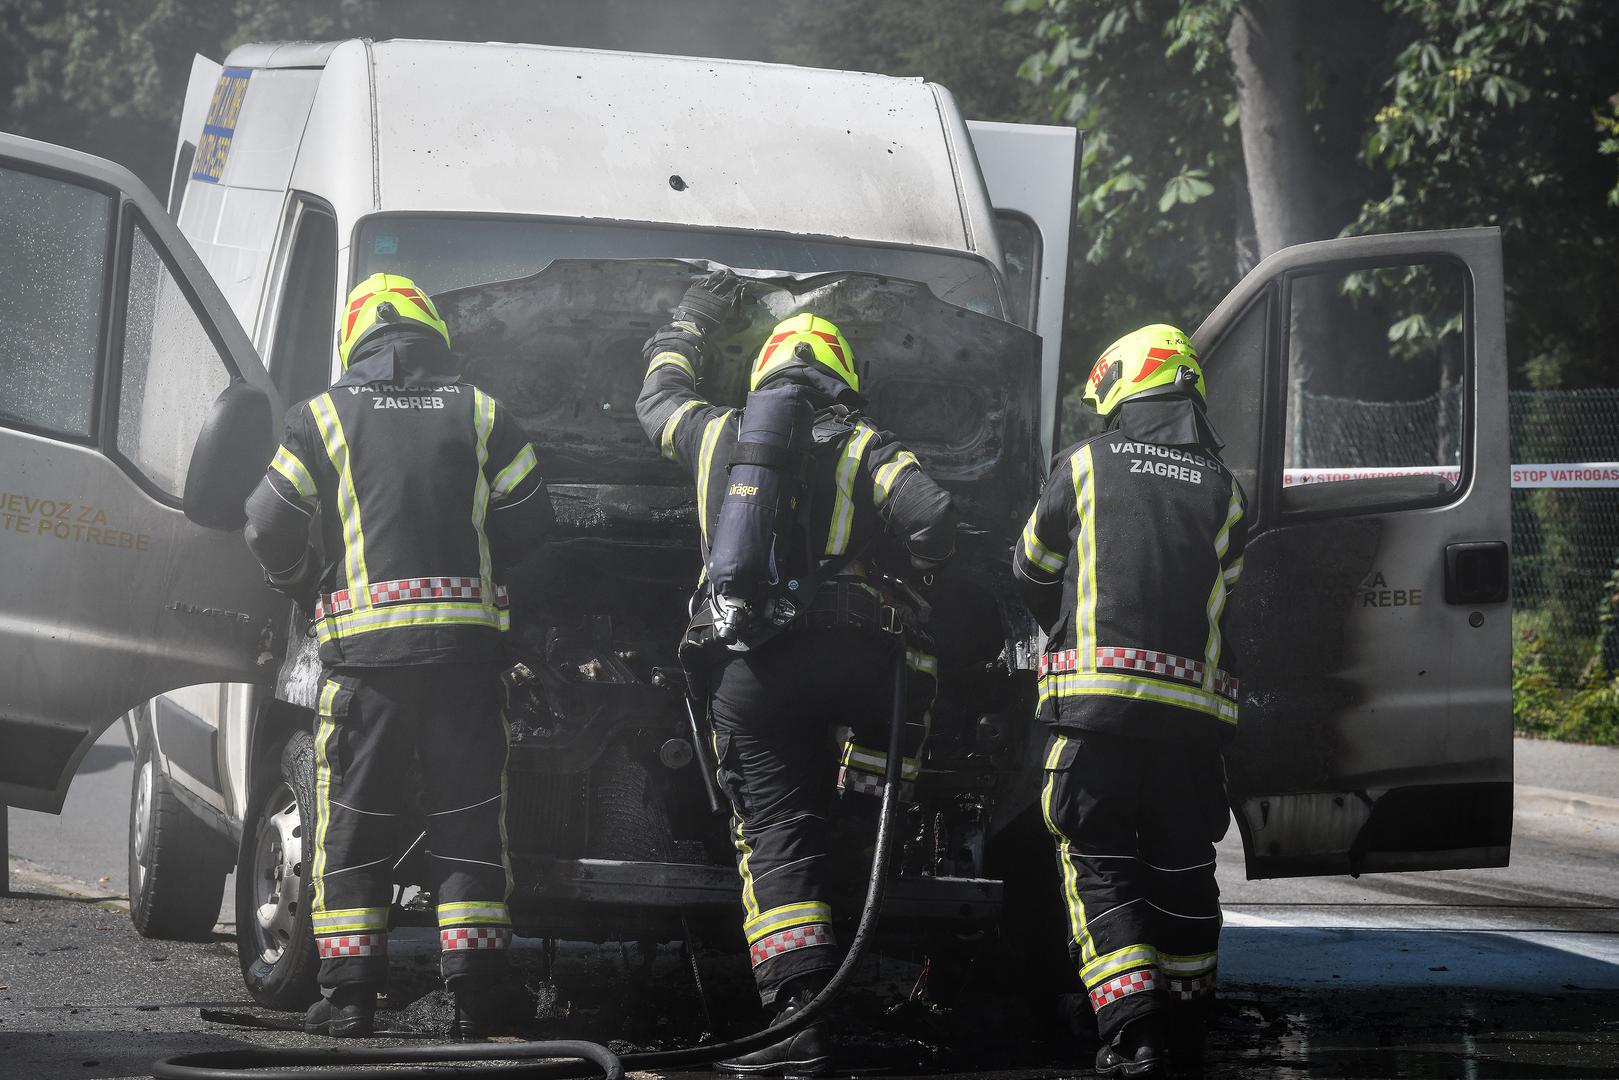 Vozilo kombija eksplodiralo je u srijedu u zagrebačkoj Hondlovoj ulici. Nitko, srećom, nije ozlijeđen u eksploziji. Vatrogasci su brzo reagirali te je vatra brzo ugašena